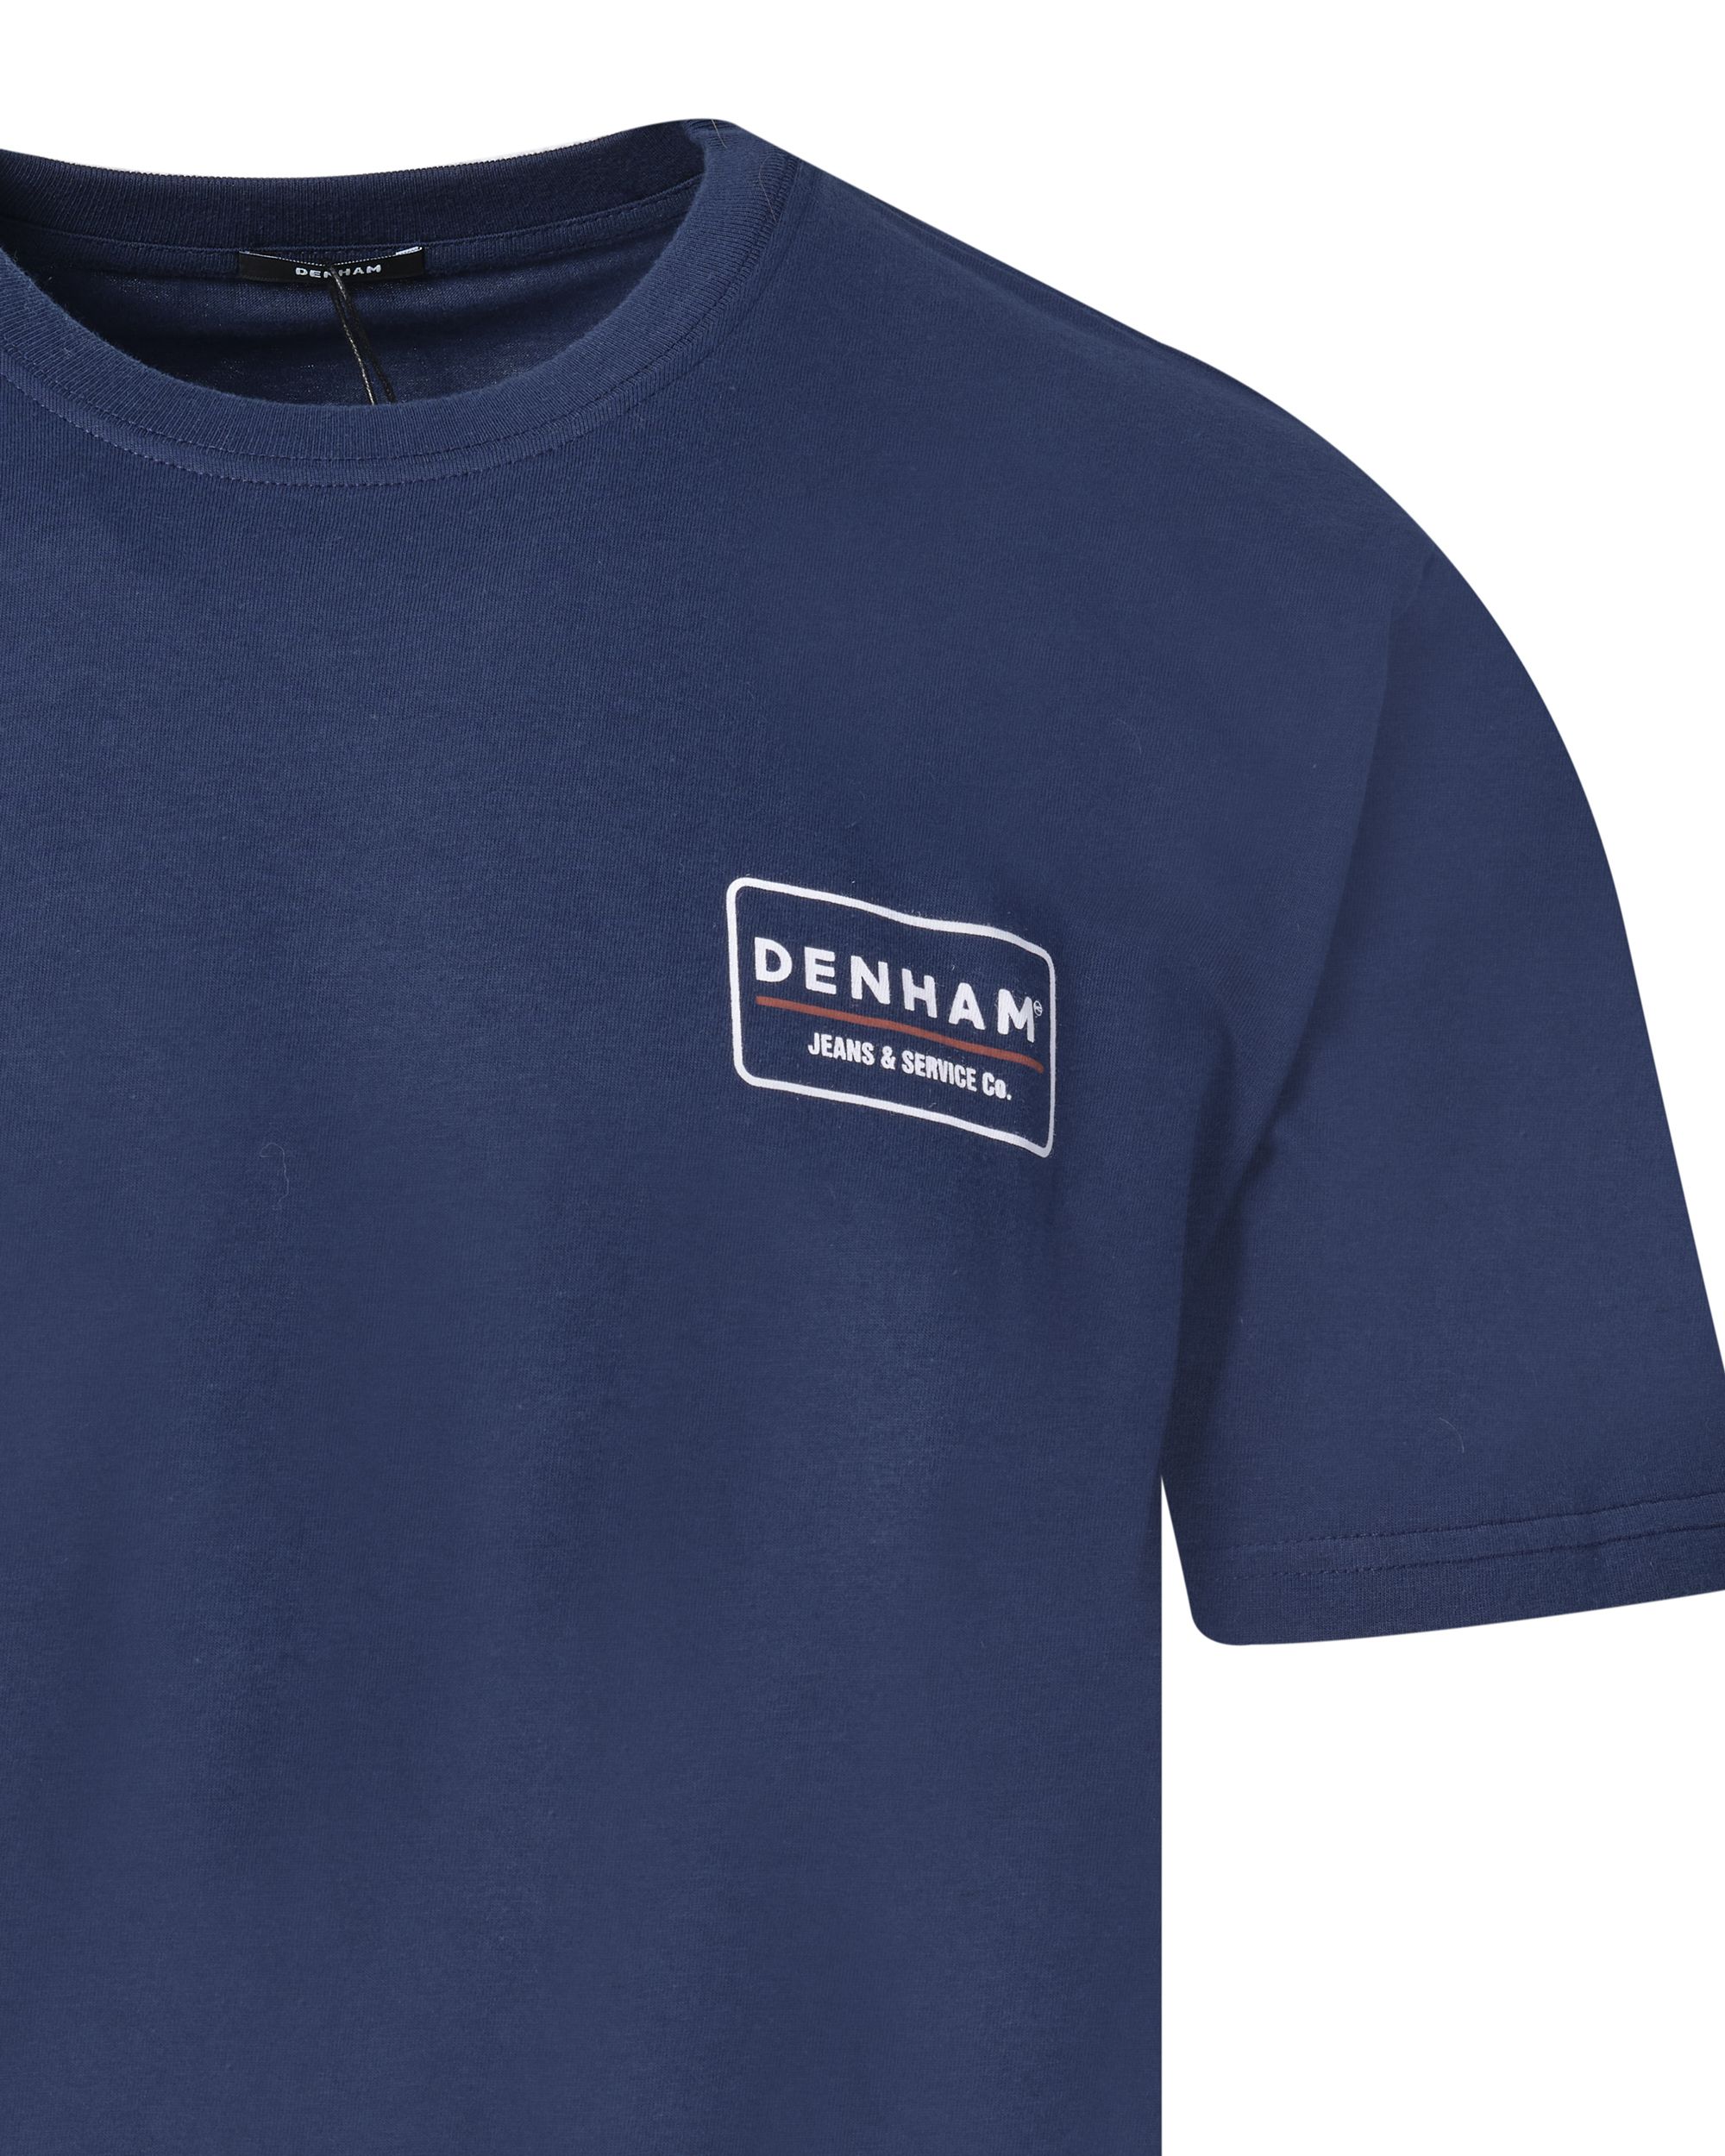 DENHAM Creston T-shirt KM Blauw 084601-001-L